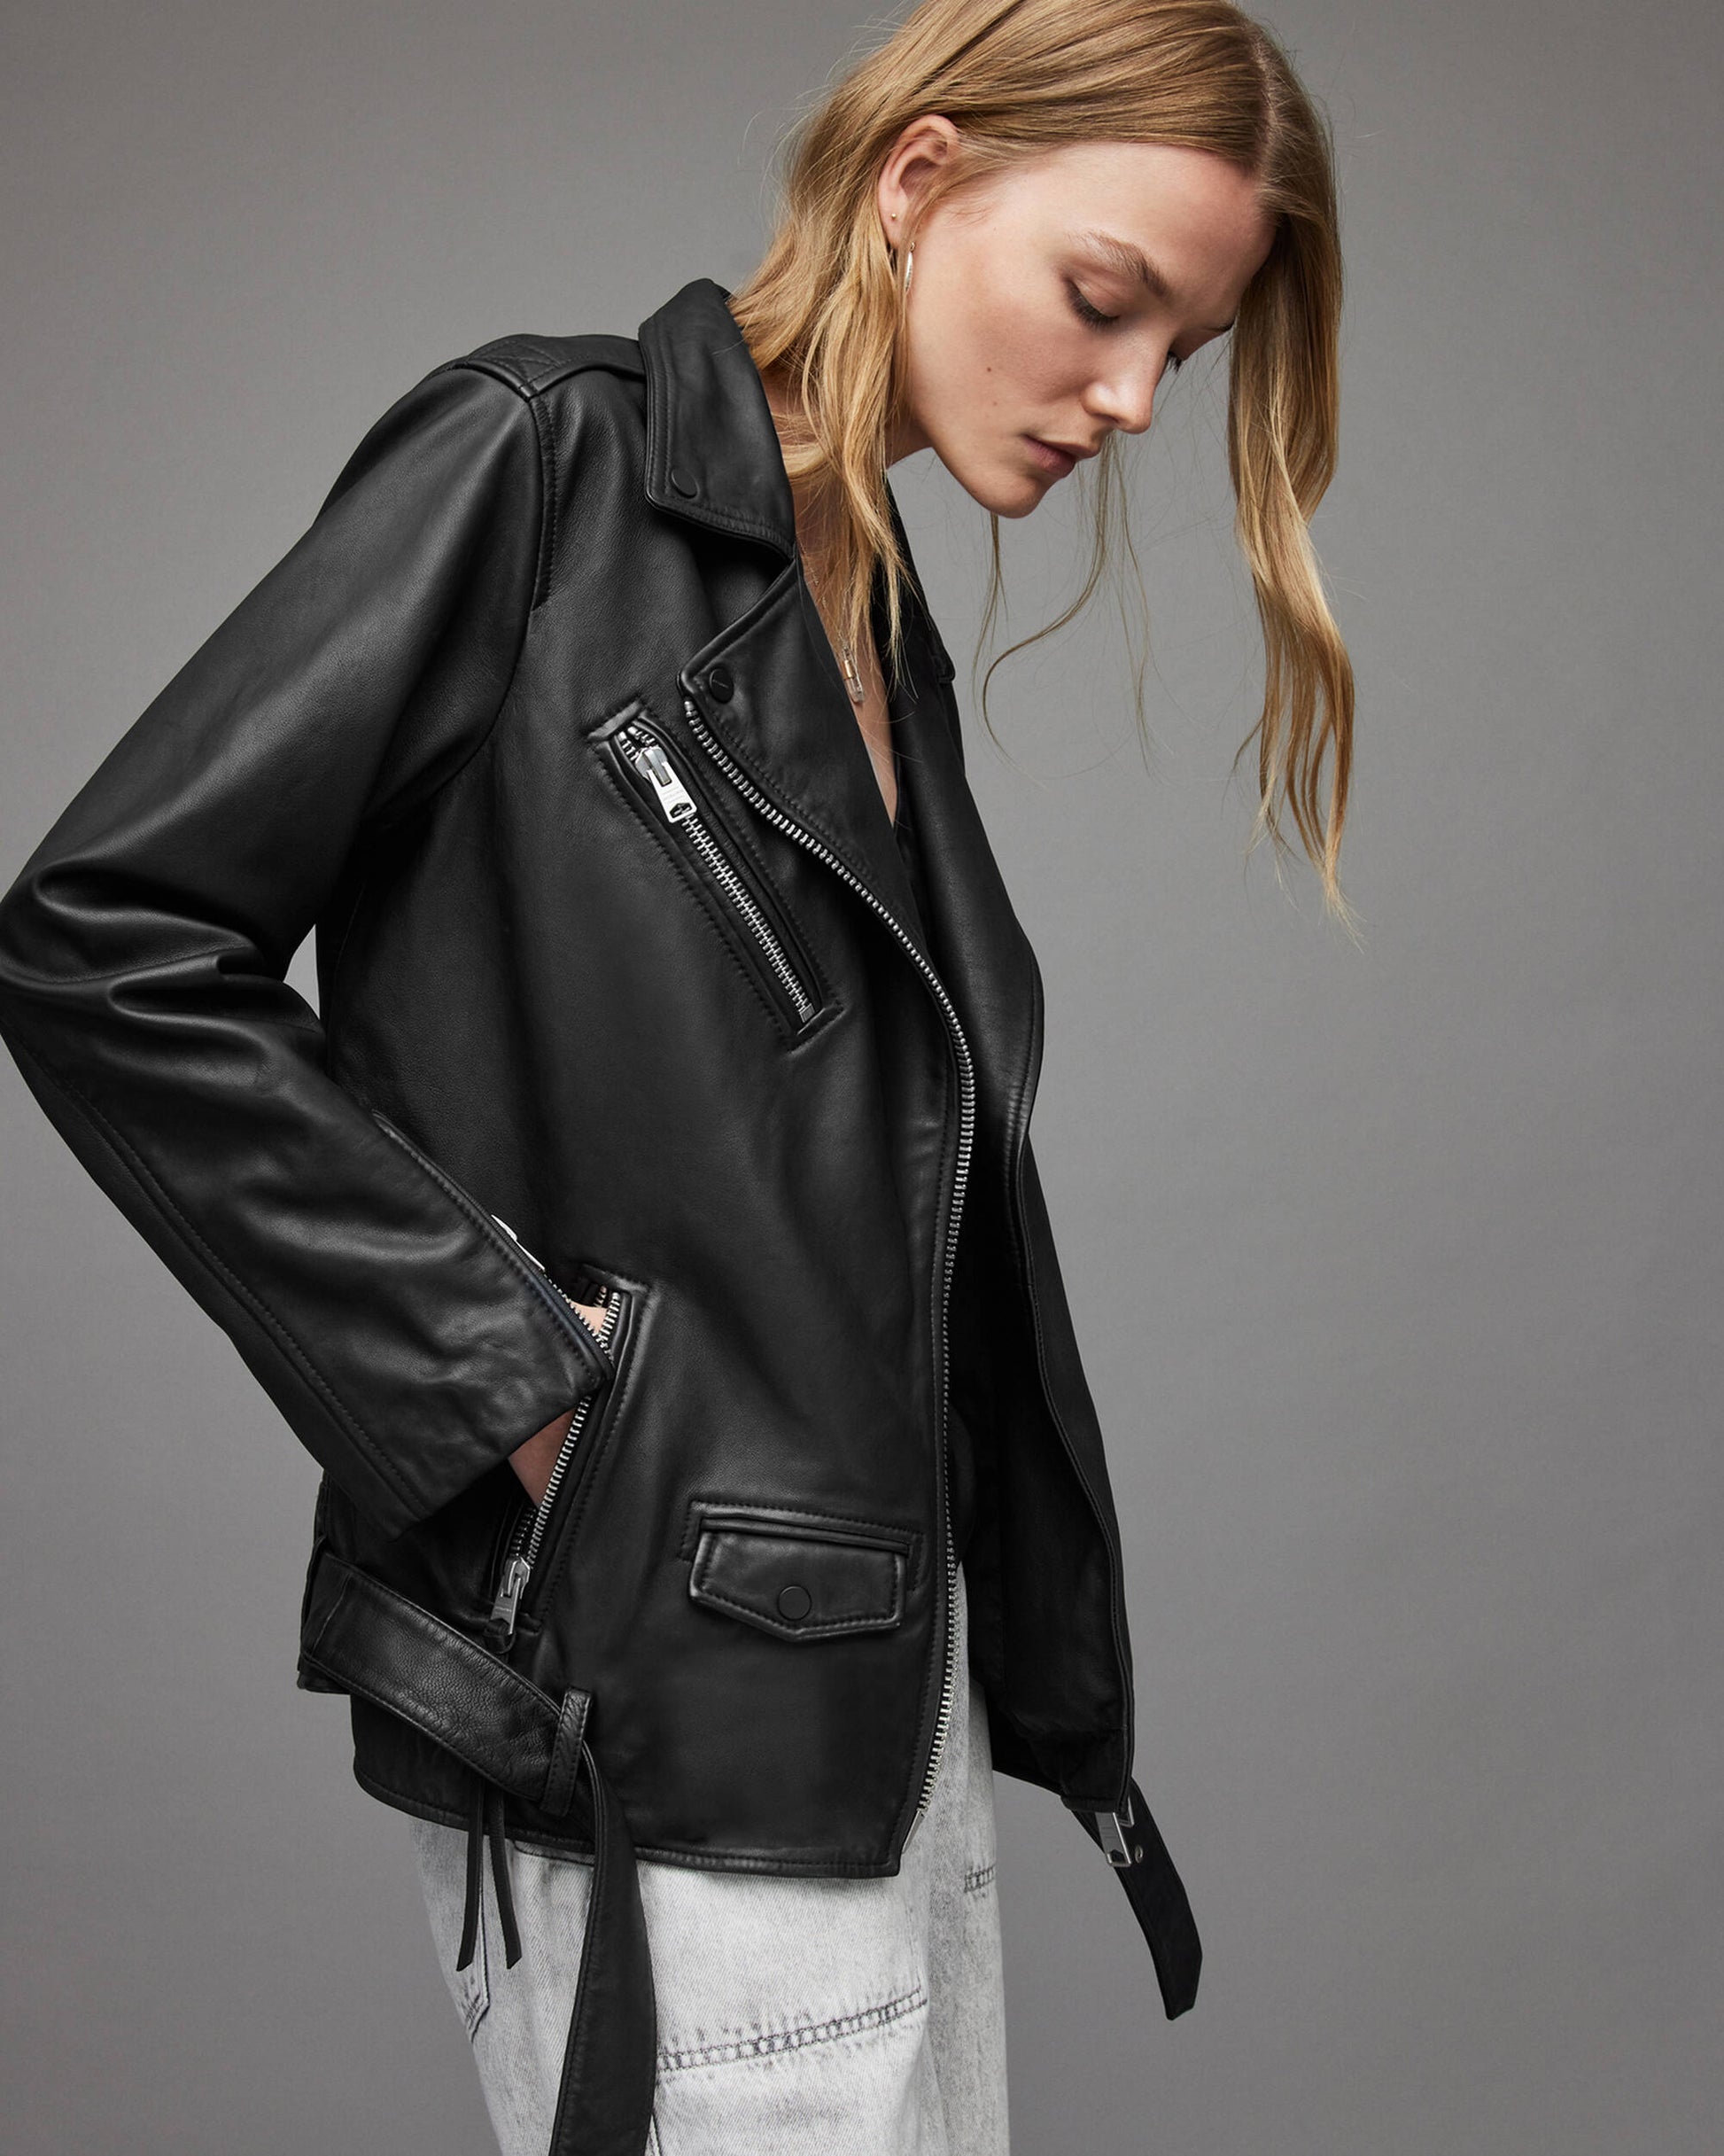 Women's Black Leather Biker Jacket With Belt